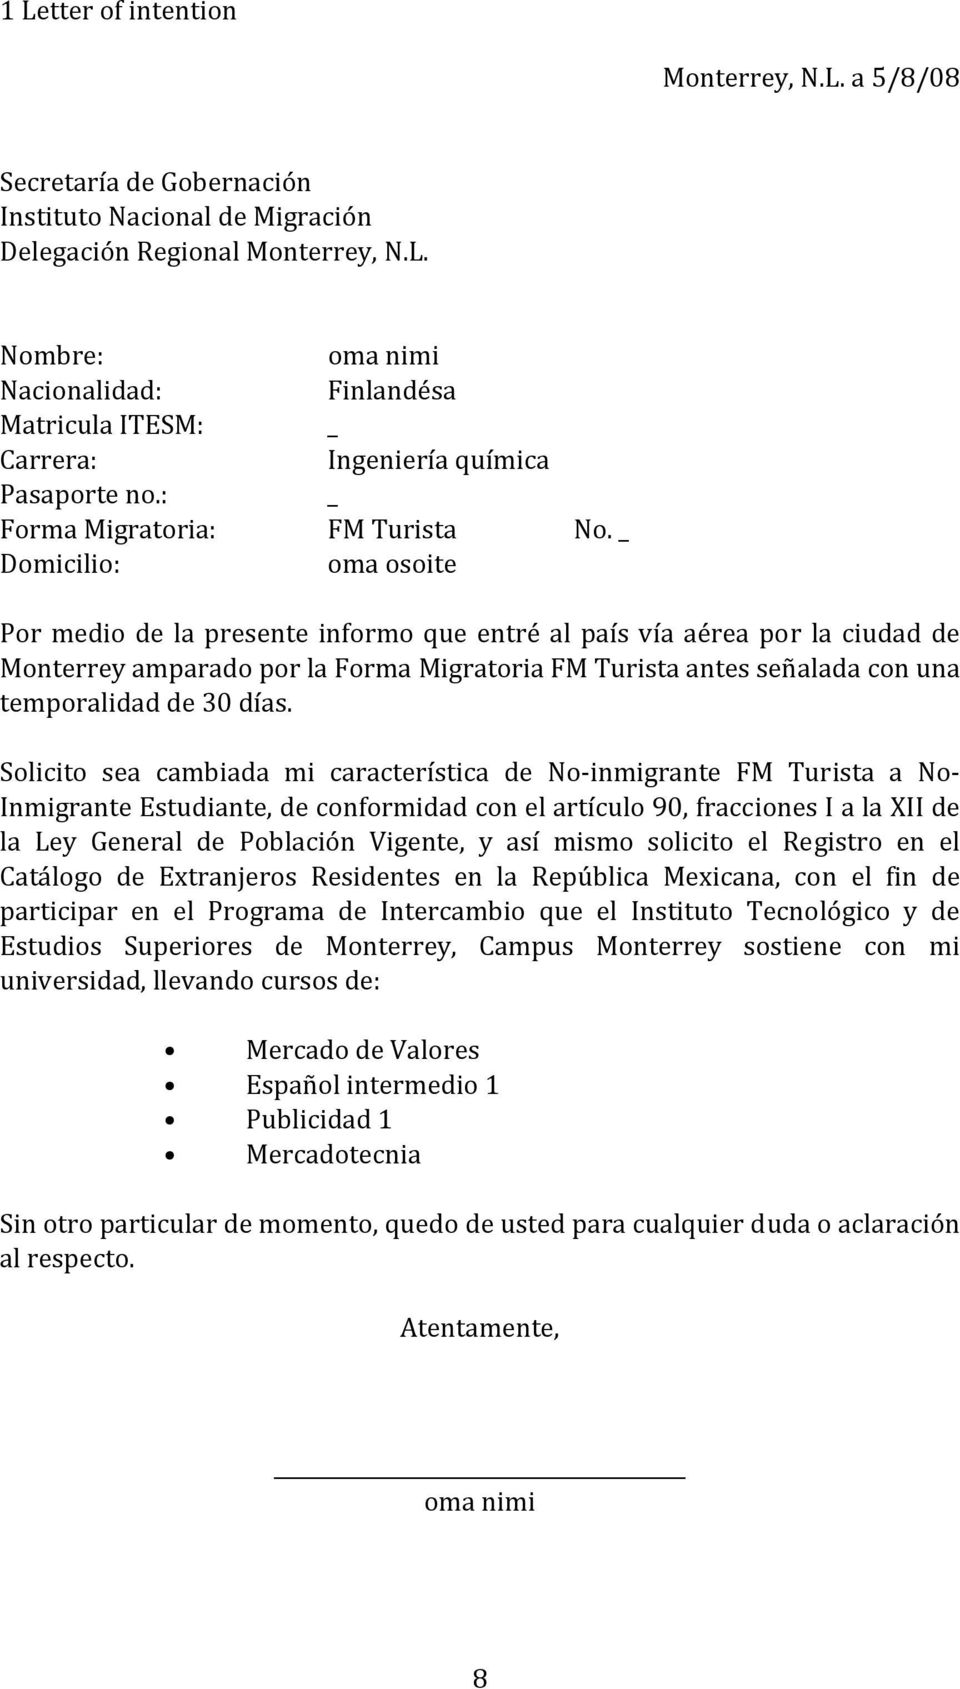 _ Por medio de la presente informo que entré al país vía aérea por la ciudad de Monterrey amparado por la Forma Migratoria FM Turista antes señalada con una temporalidad de 30 días.